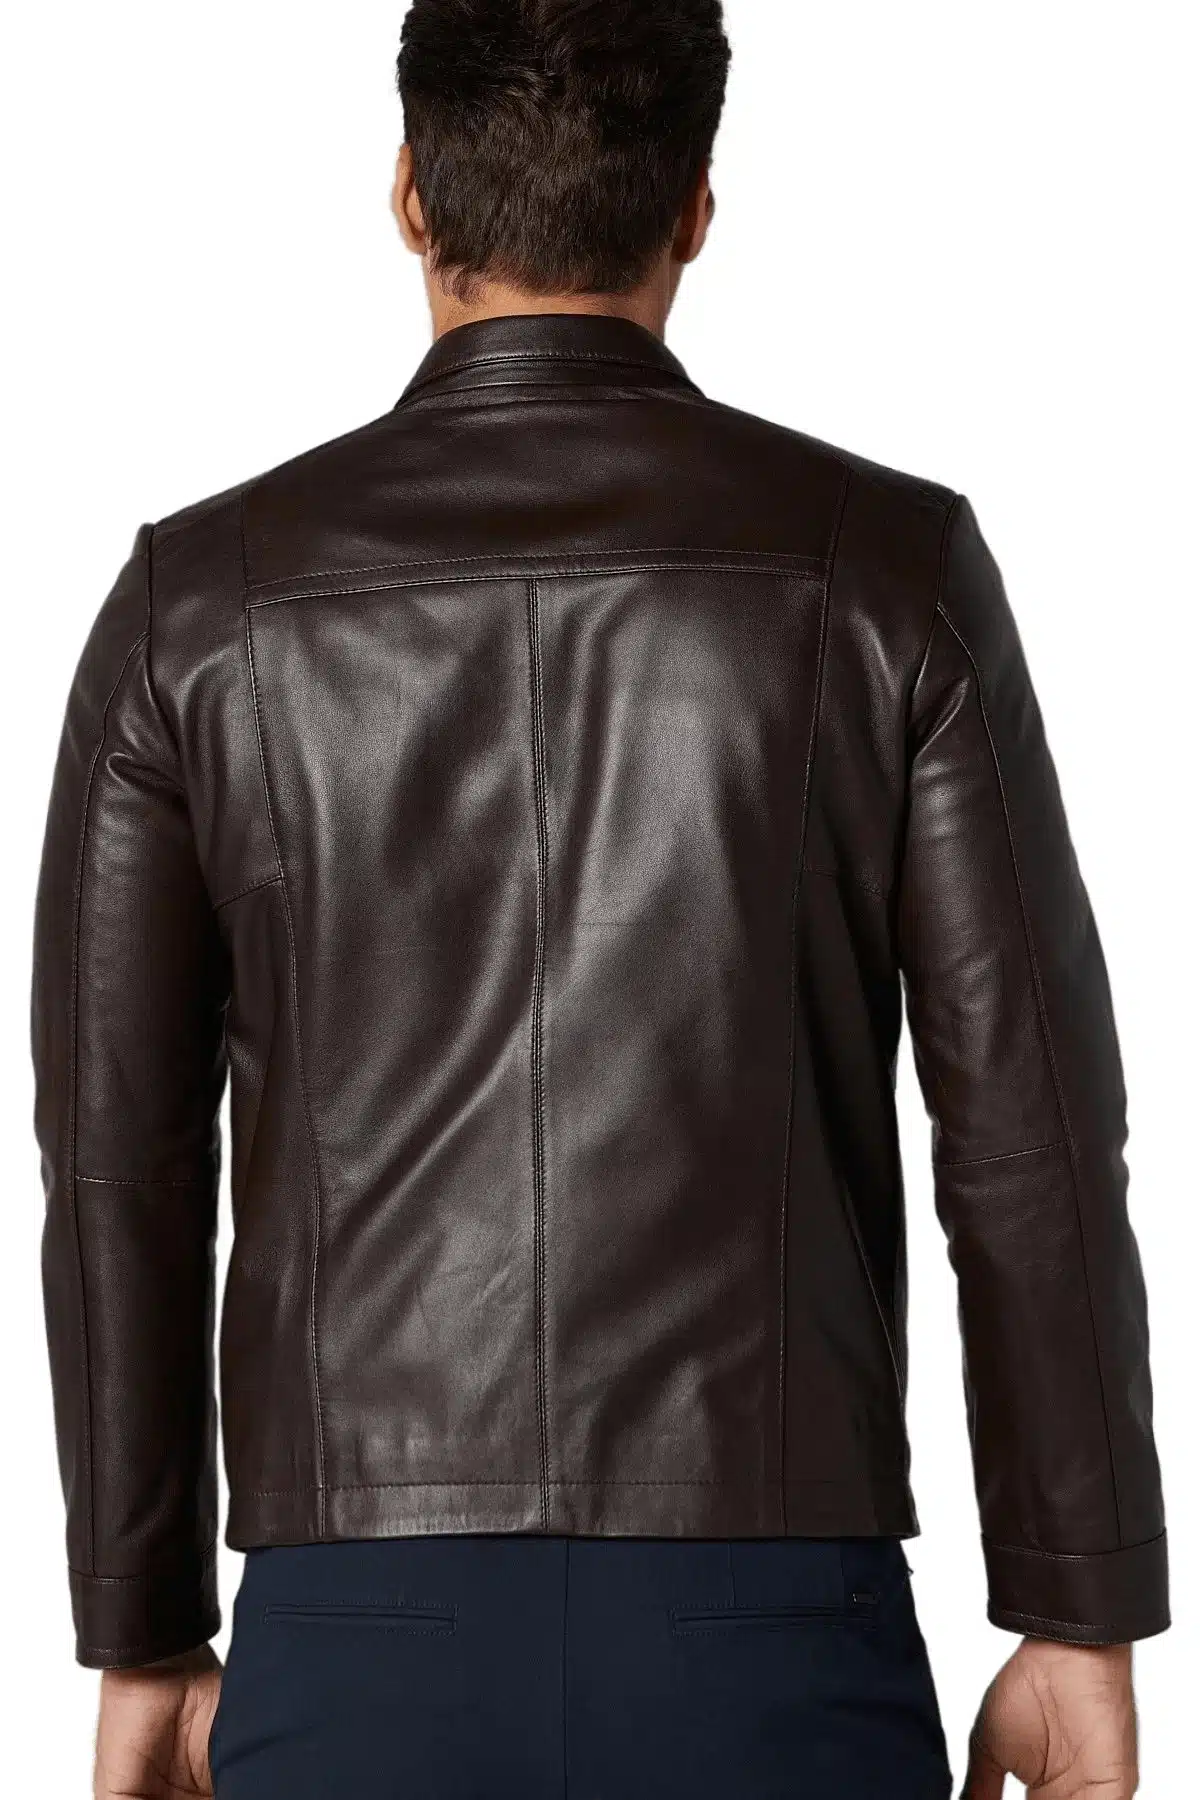 Levi Brown Vintage Men’s Leather Jacket (4)_result